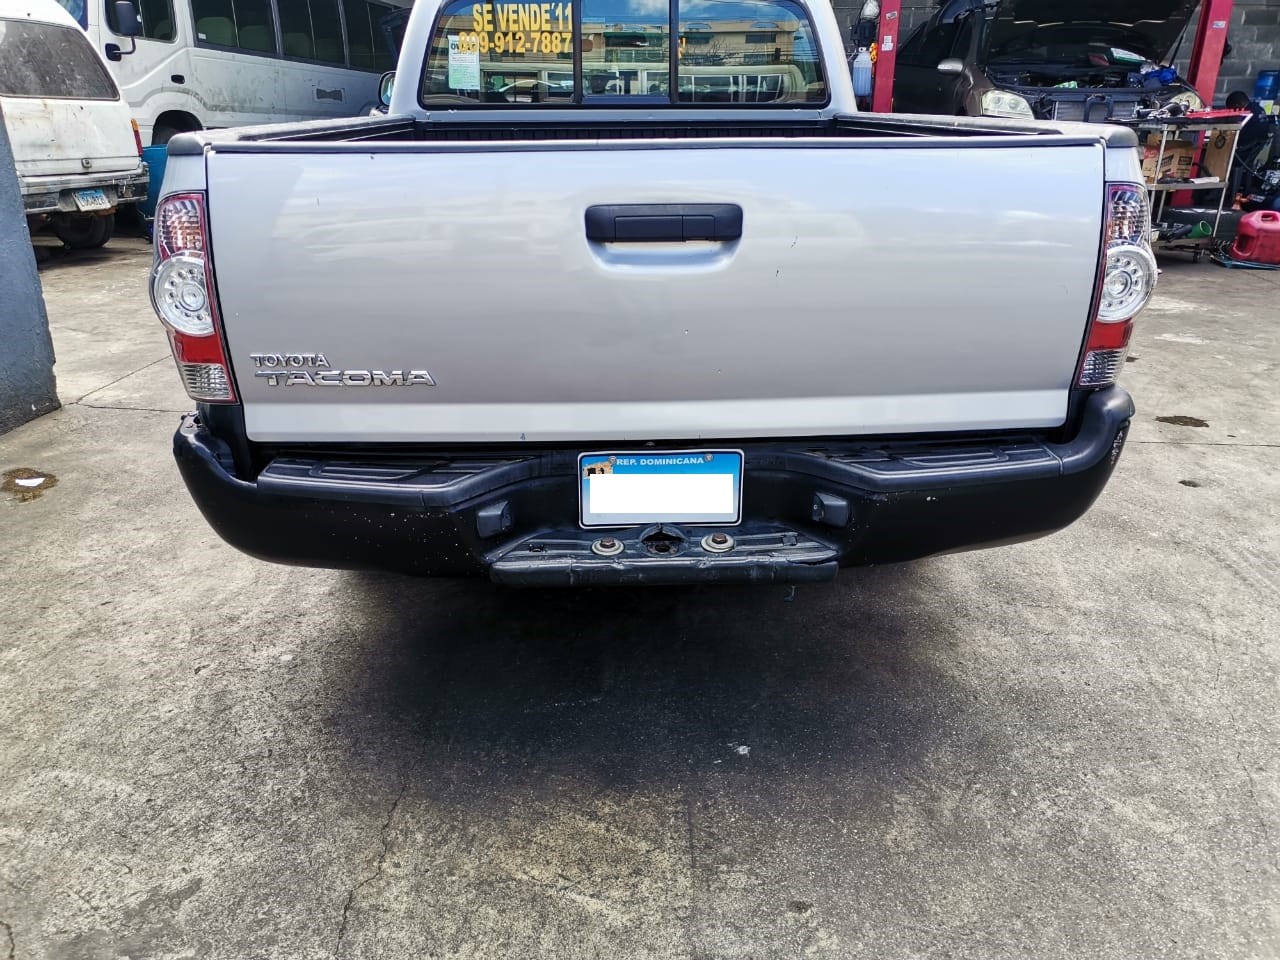 jeepetas y camionetas - Toyota Tacoma 11 como nueva 2